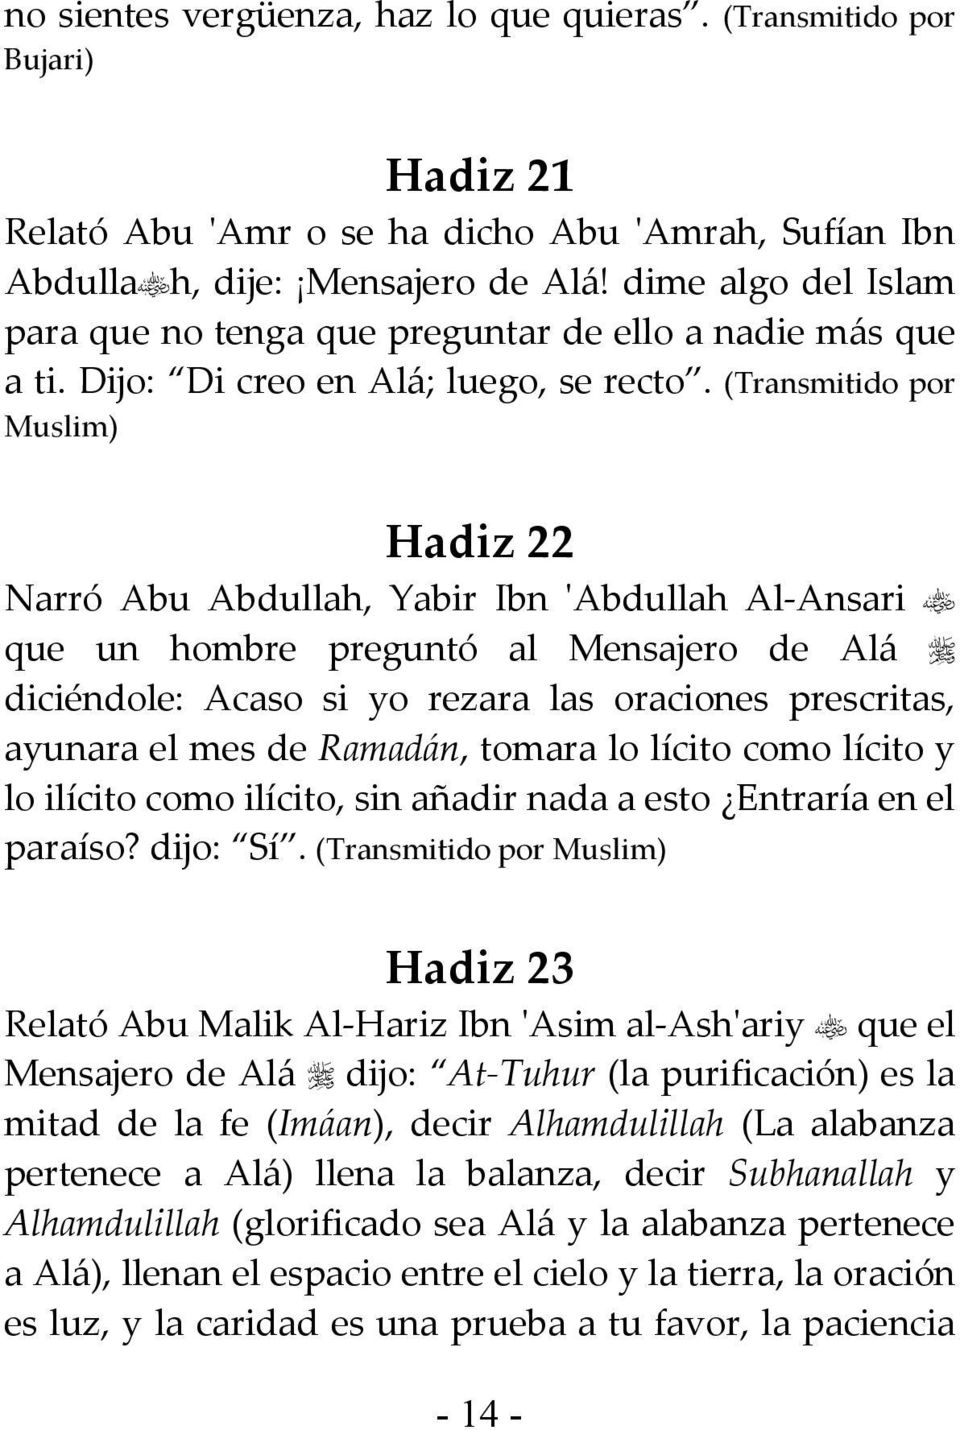 (Transmitido por Muslim) Narró Abu Abdullah, Yabir Ibn 'Abdullah Al-Ansari que un hombre preguntó al Mensajero de Alá diciéndole: Acaso si yo rezara las oraciones prescritas, ayunara el mes de